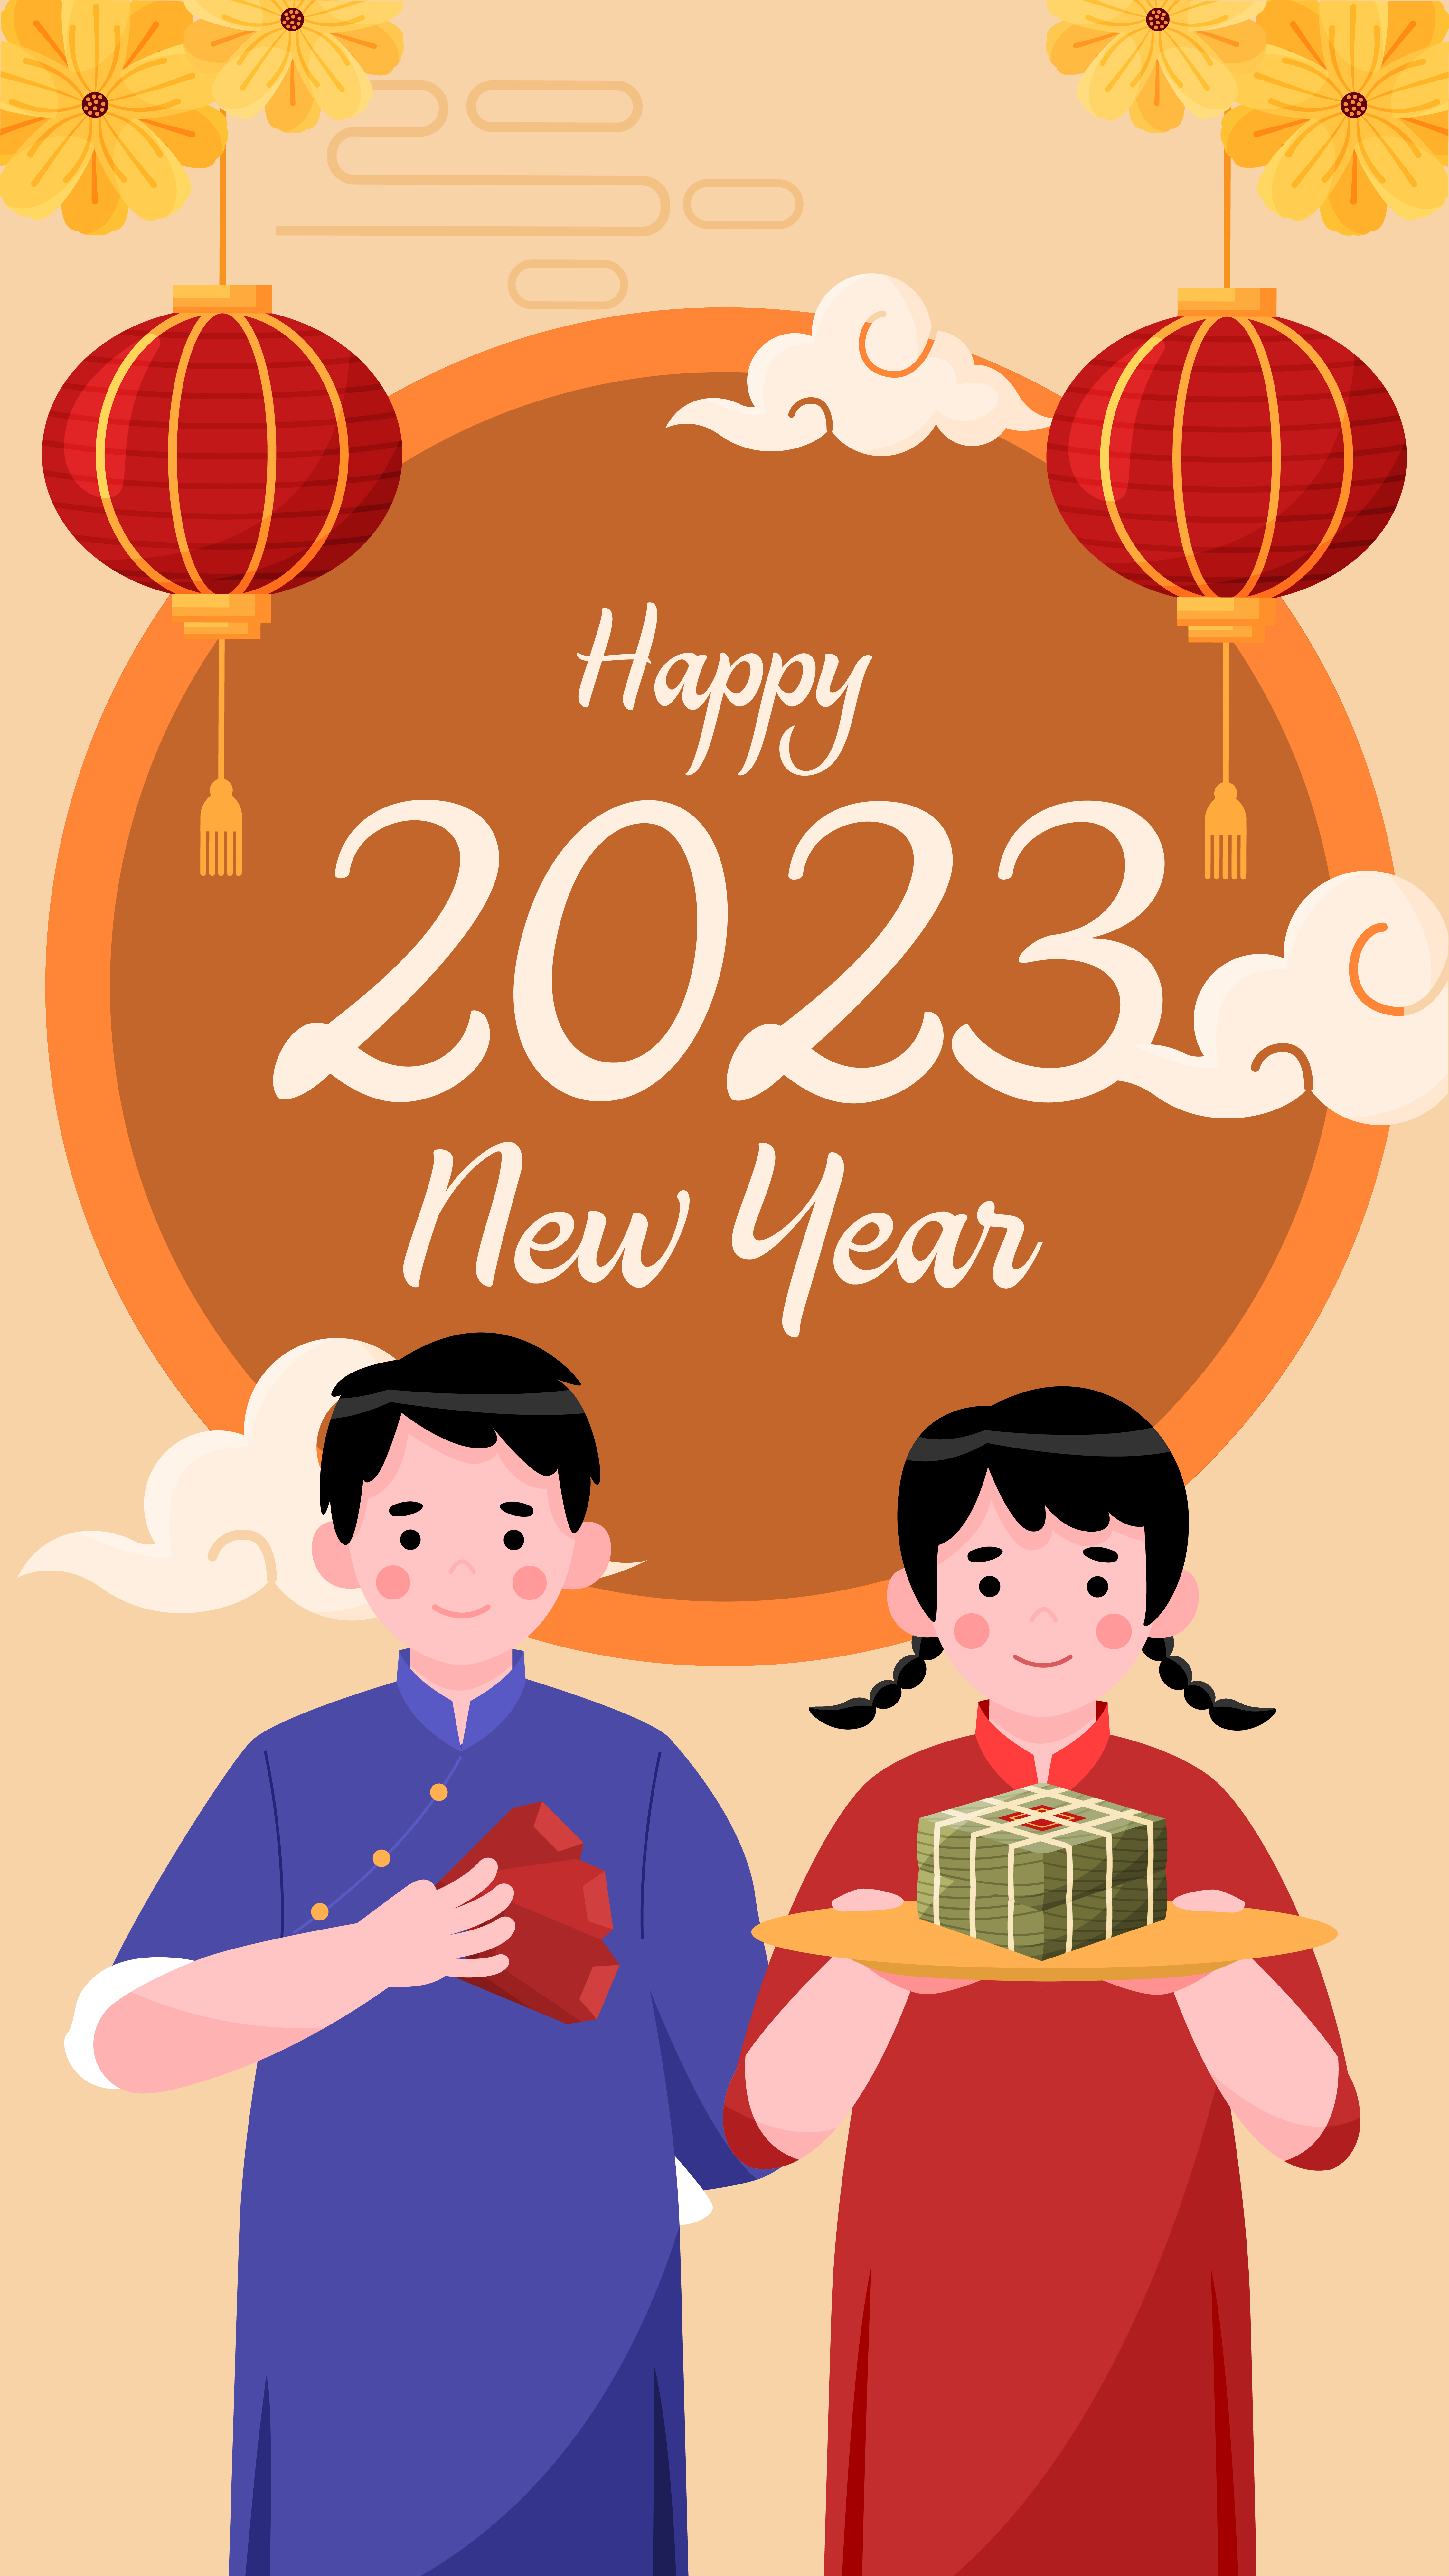 Hình Ảnh Chúc Mừng Năm Mới 2024: Chẳng còn gì tuyệt vời hơn là được thể hiện tình cảm và lời chúc đến bạn bè, người thân trong dịp xuân mới. Hãy cùng xem những hình ảnh \